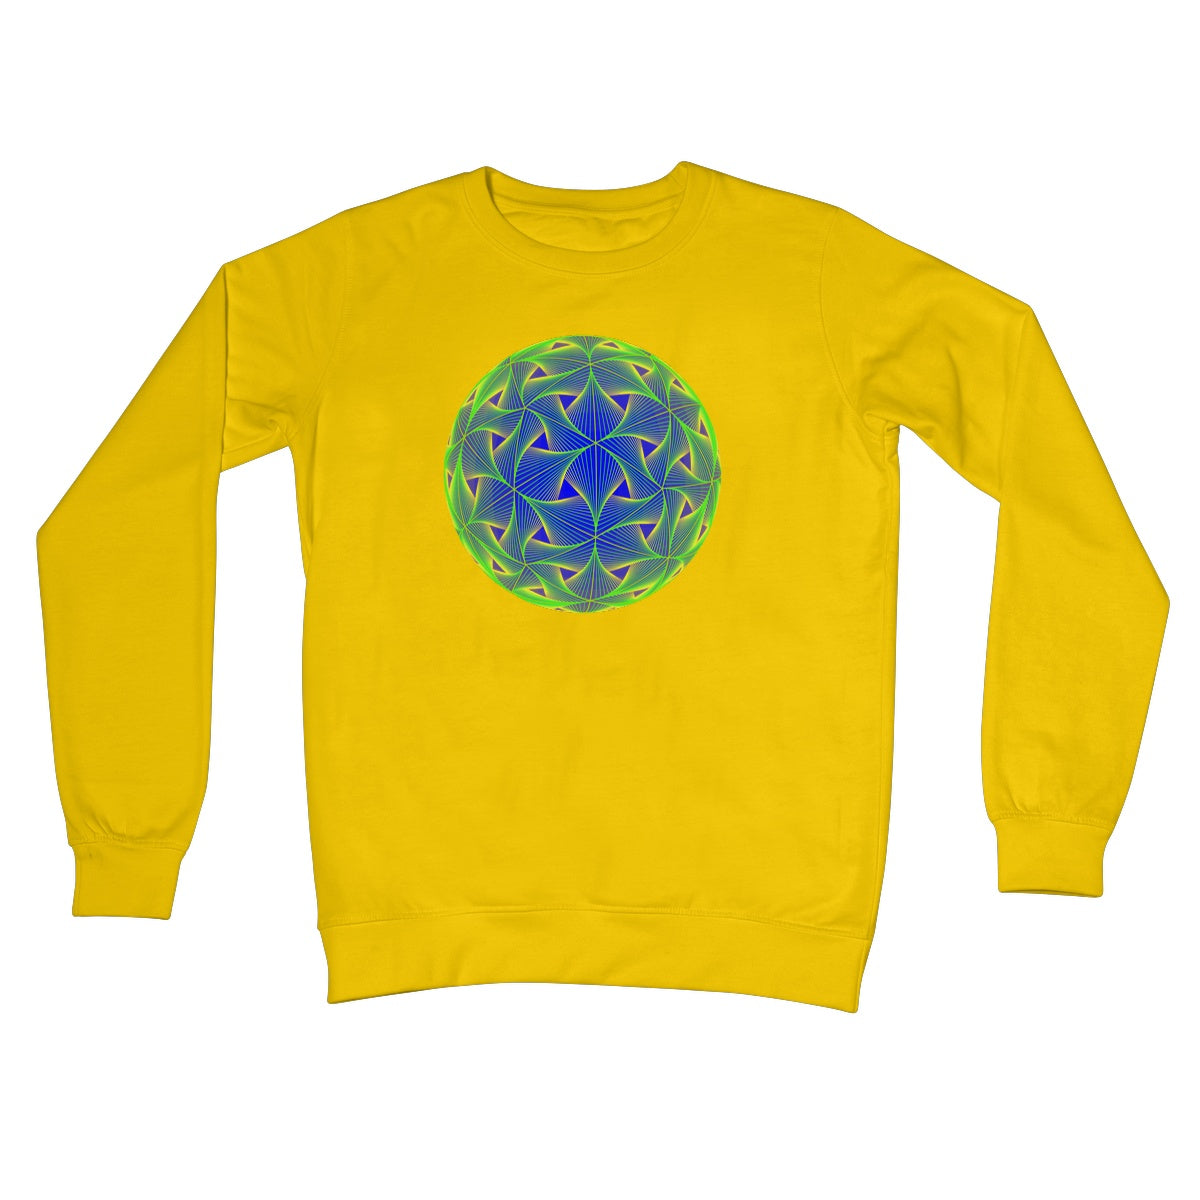 Diatom, Green Crew Neck Sweatshirt